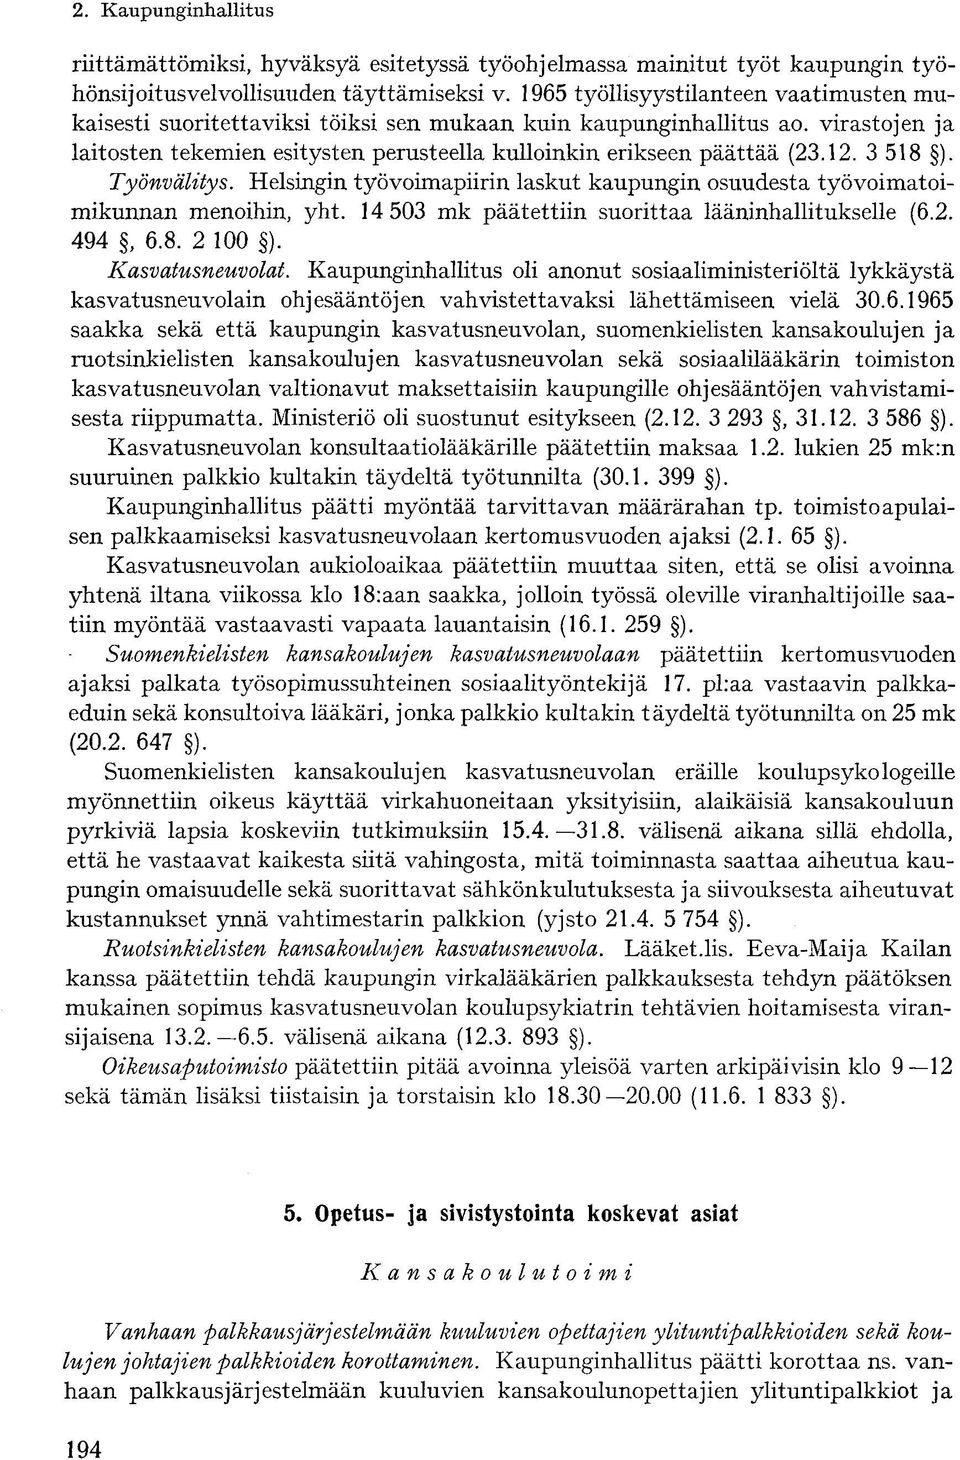 3 518 ). Työnvälitys. Helsingin työvoimapiirin laskut kaupungin osuudesta työvoimatoimikunnan menoihin, yht. 14 503 mk päätettiin suorittaa lääninhallitukselle (6.2. 494, 6.8. 2 100 ).